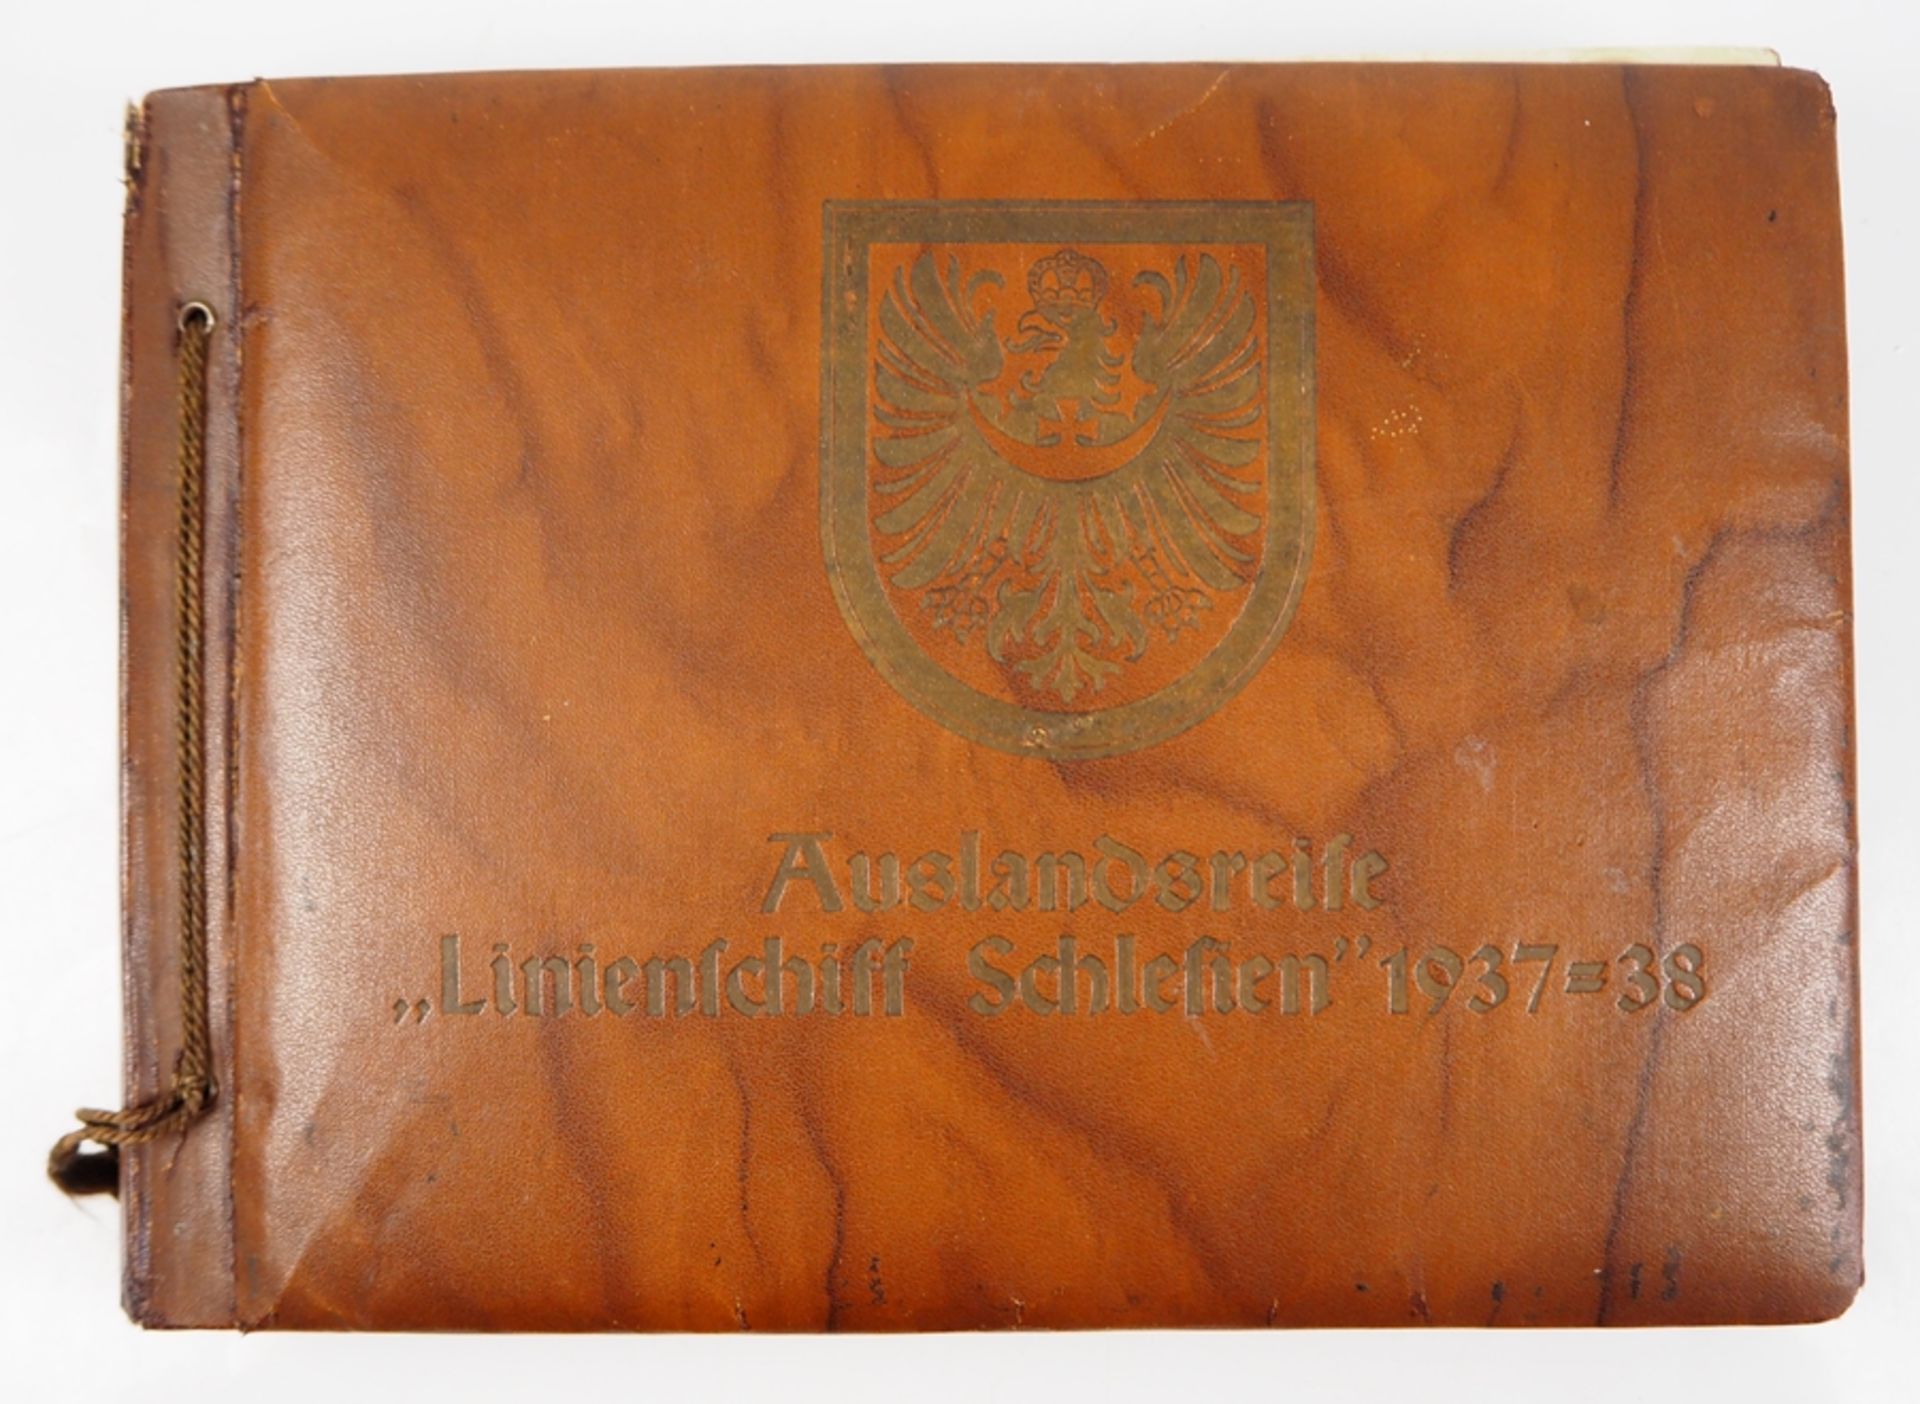 Fotoalbum der Auslandsreise des Linienschiff Schlesien 1937-38.